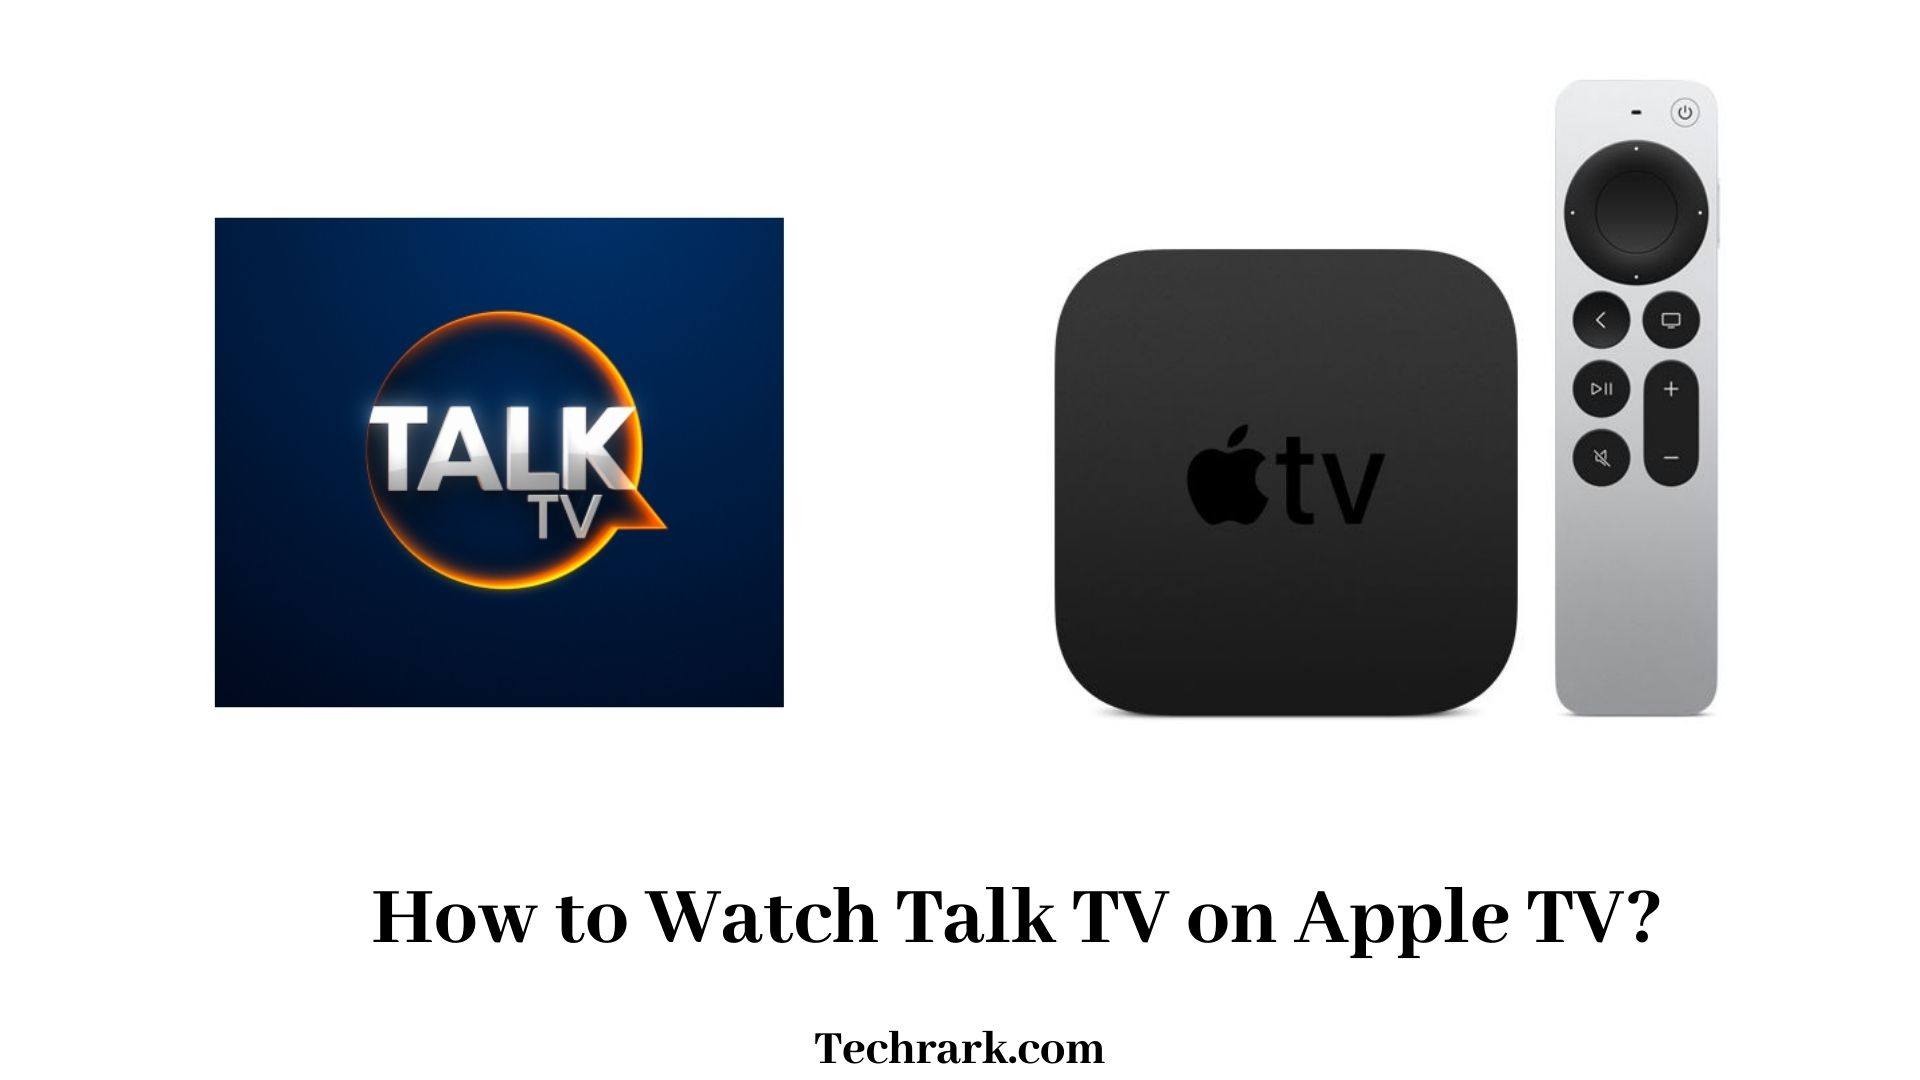 Talk TV on Apple TV